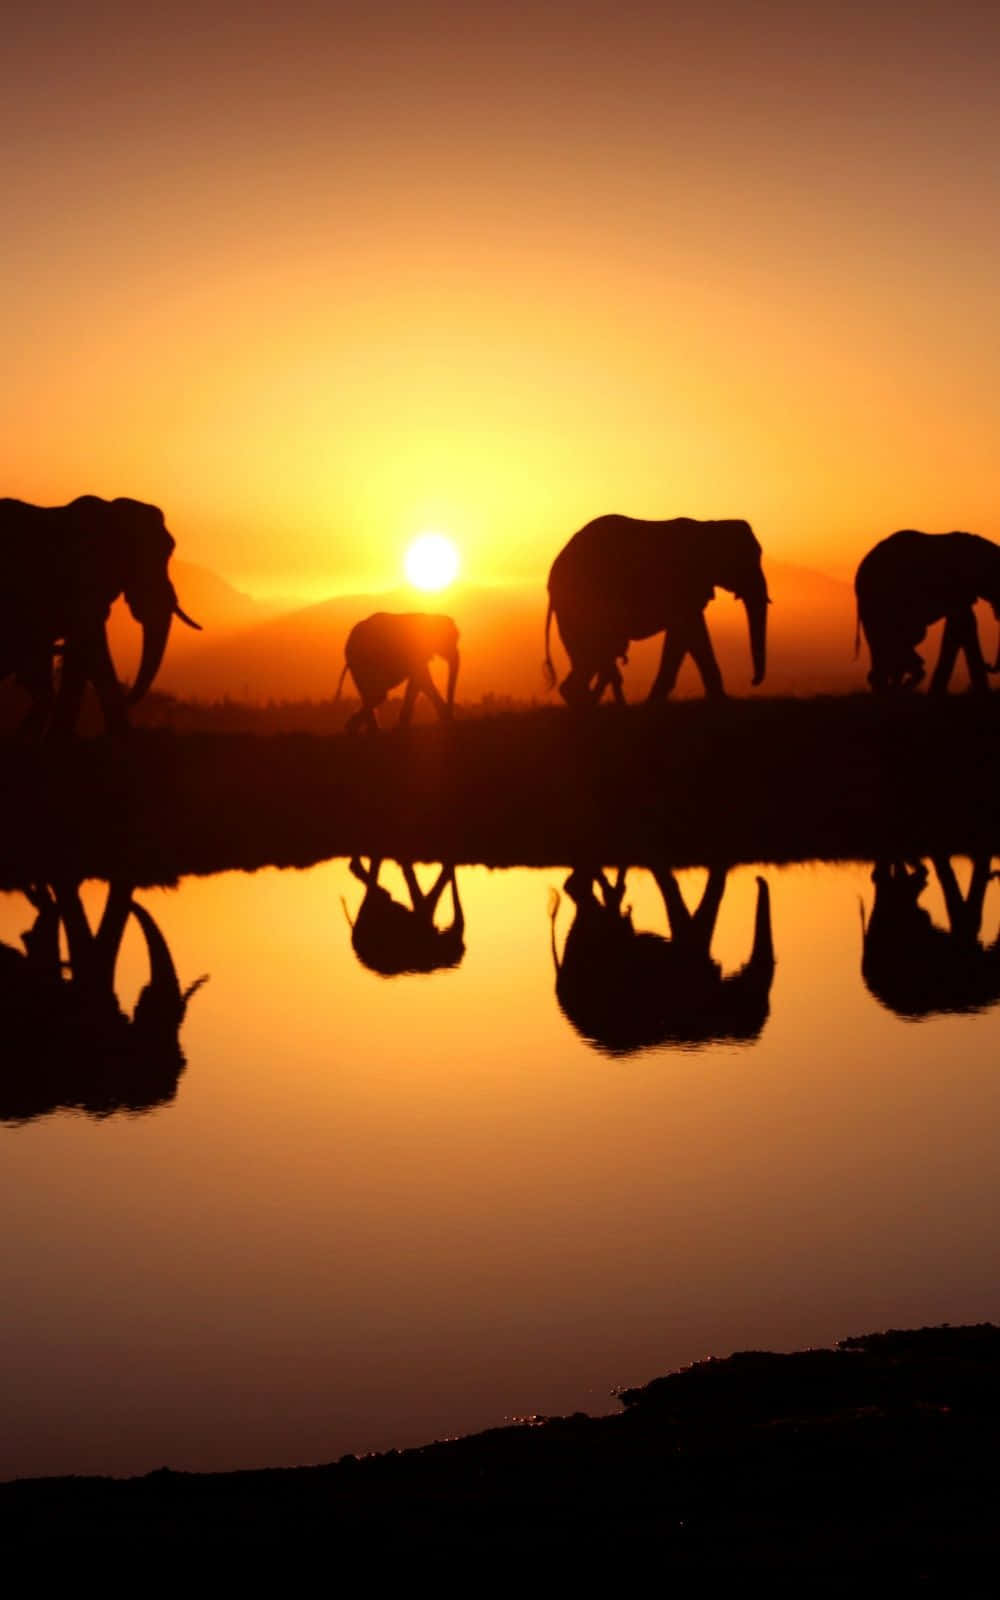 Best Elephant Background Sunset Lake View Background